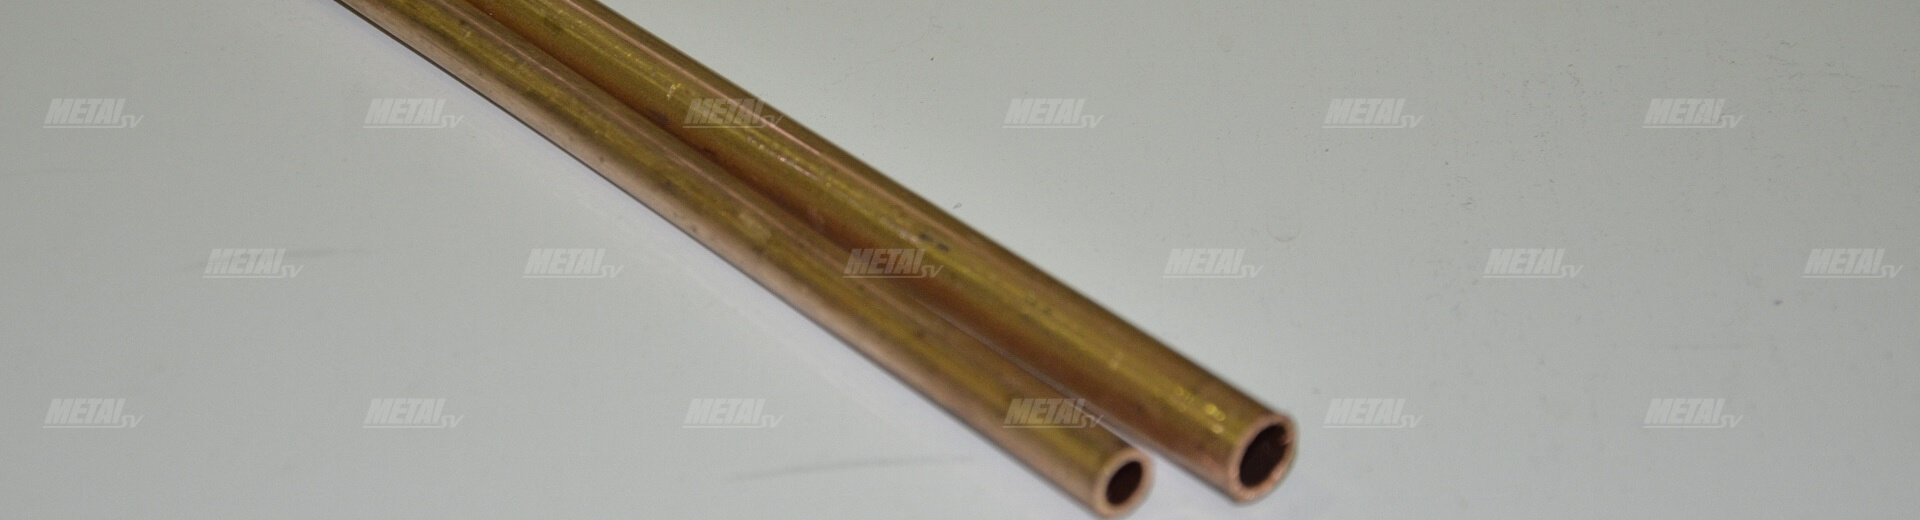 8 мм — медная труба для Кирова изображение №3